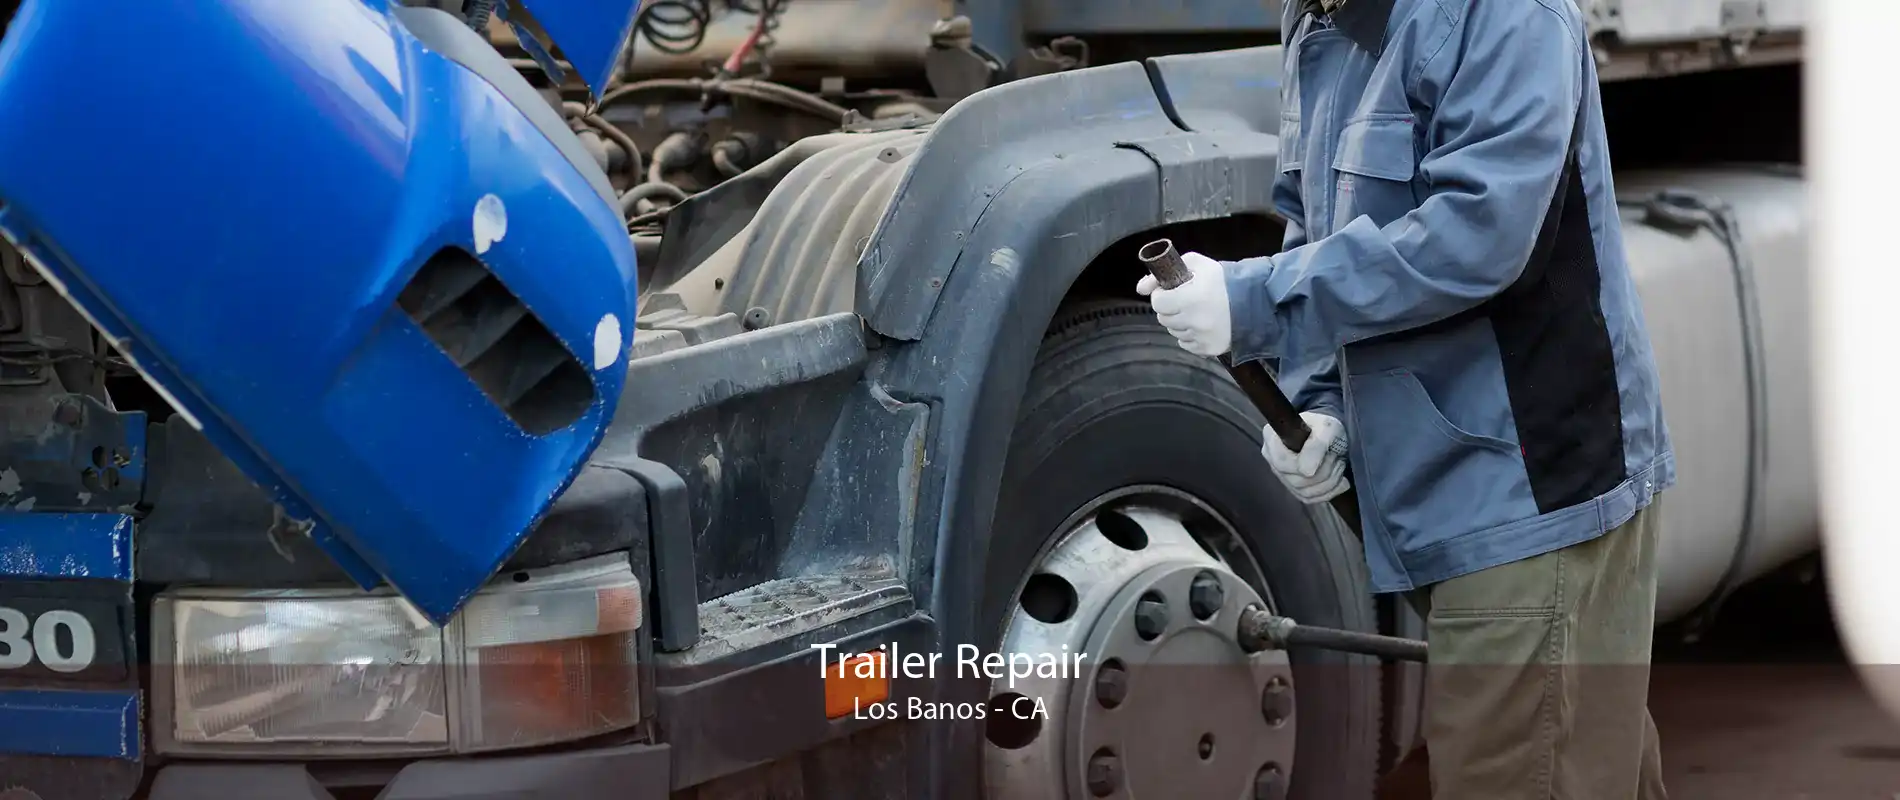 Trailer Repair Los Banos - CA